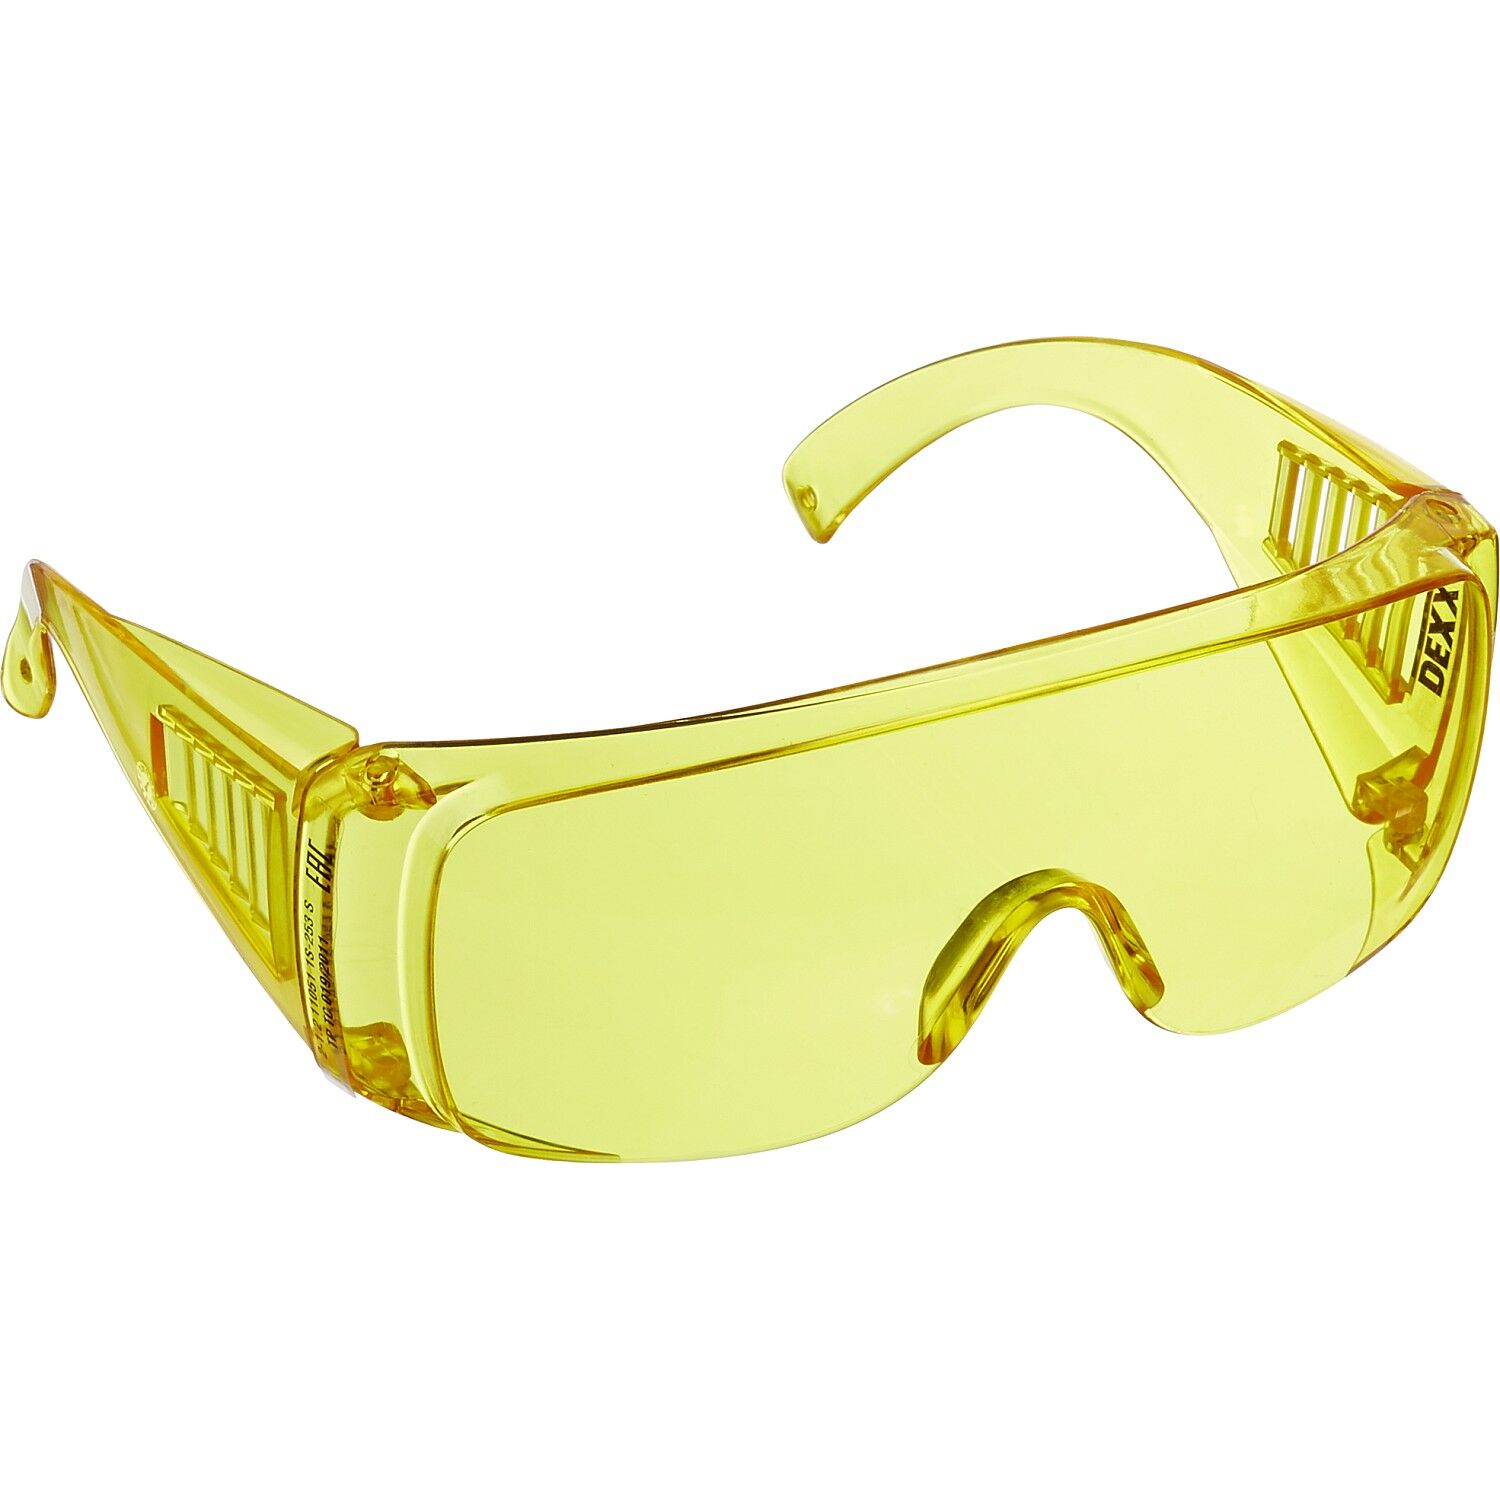 Открытые защитные очки поликарбонат. Очки защитные DEXX 11051 желтые. Очки защитные Stayer 11042 желтые. Защитные очки желтые Champion c1006. Защитные очки Stayer Standard.